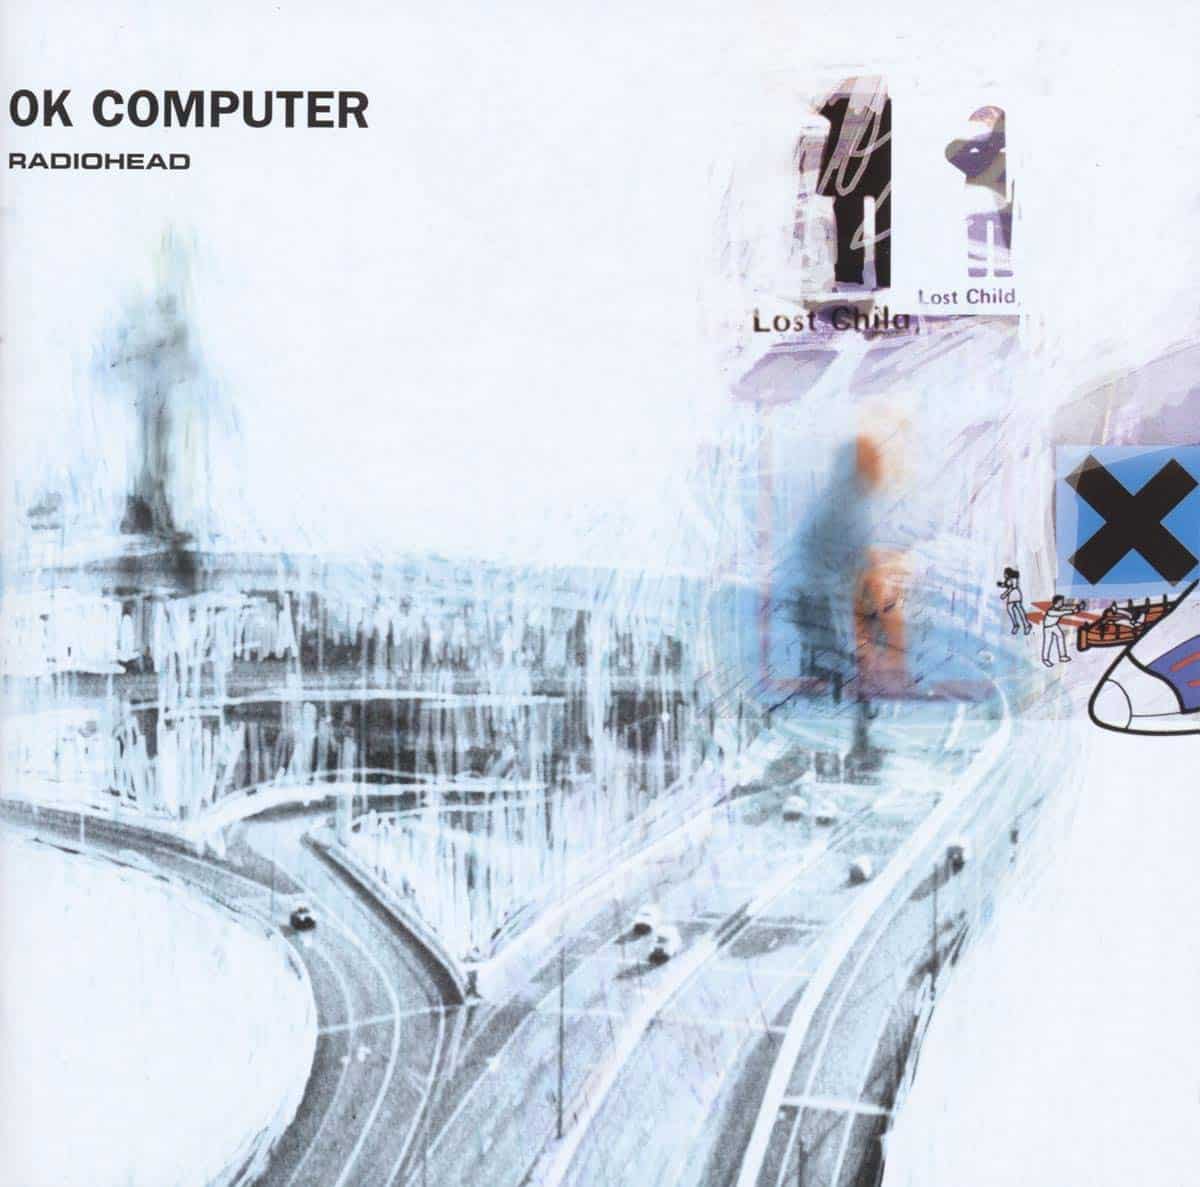 Radiohead-OK-Computer-vinyl-record-album-front